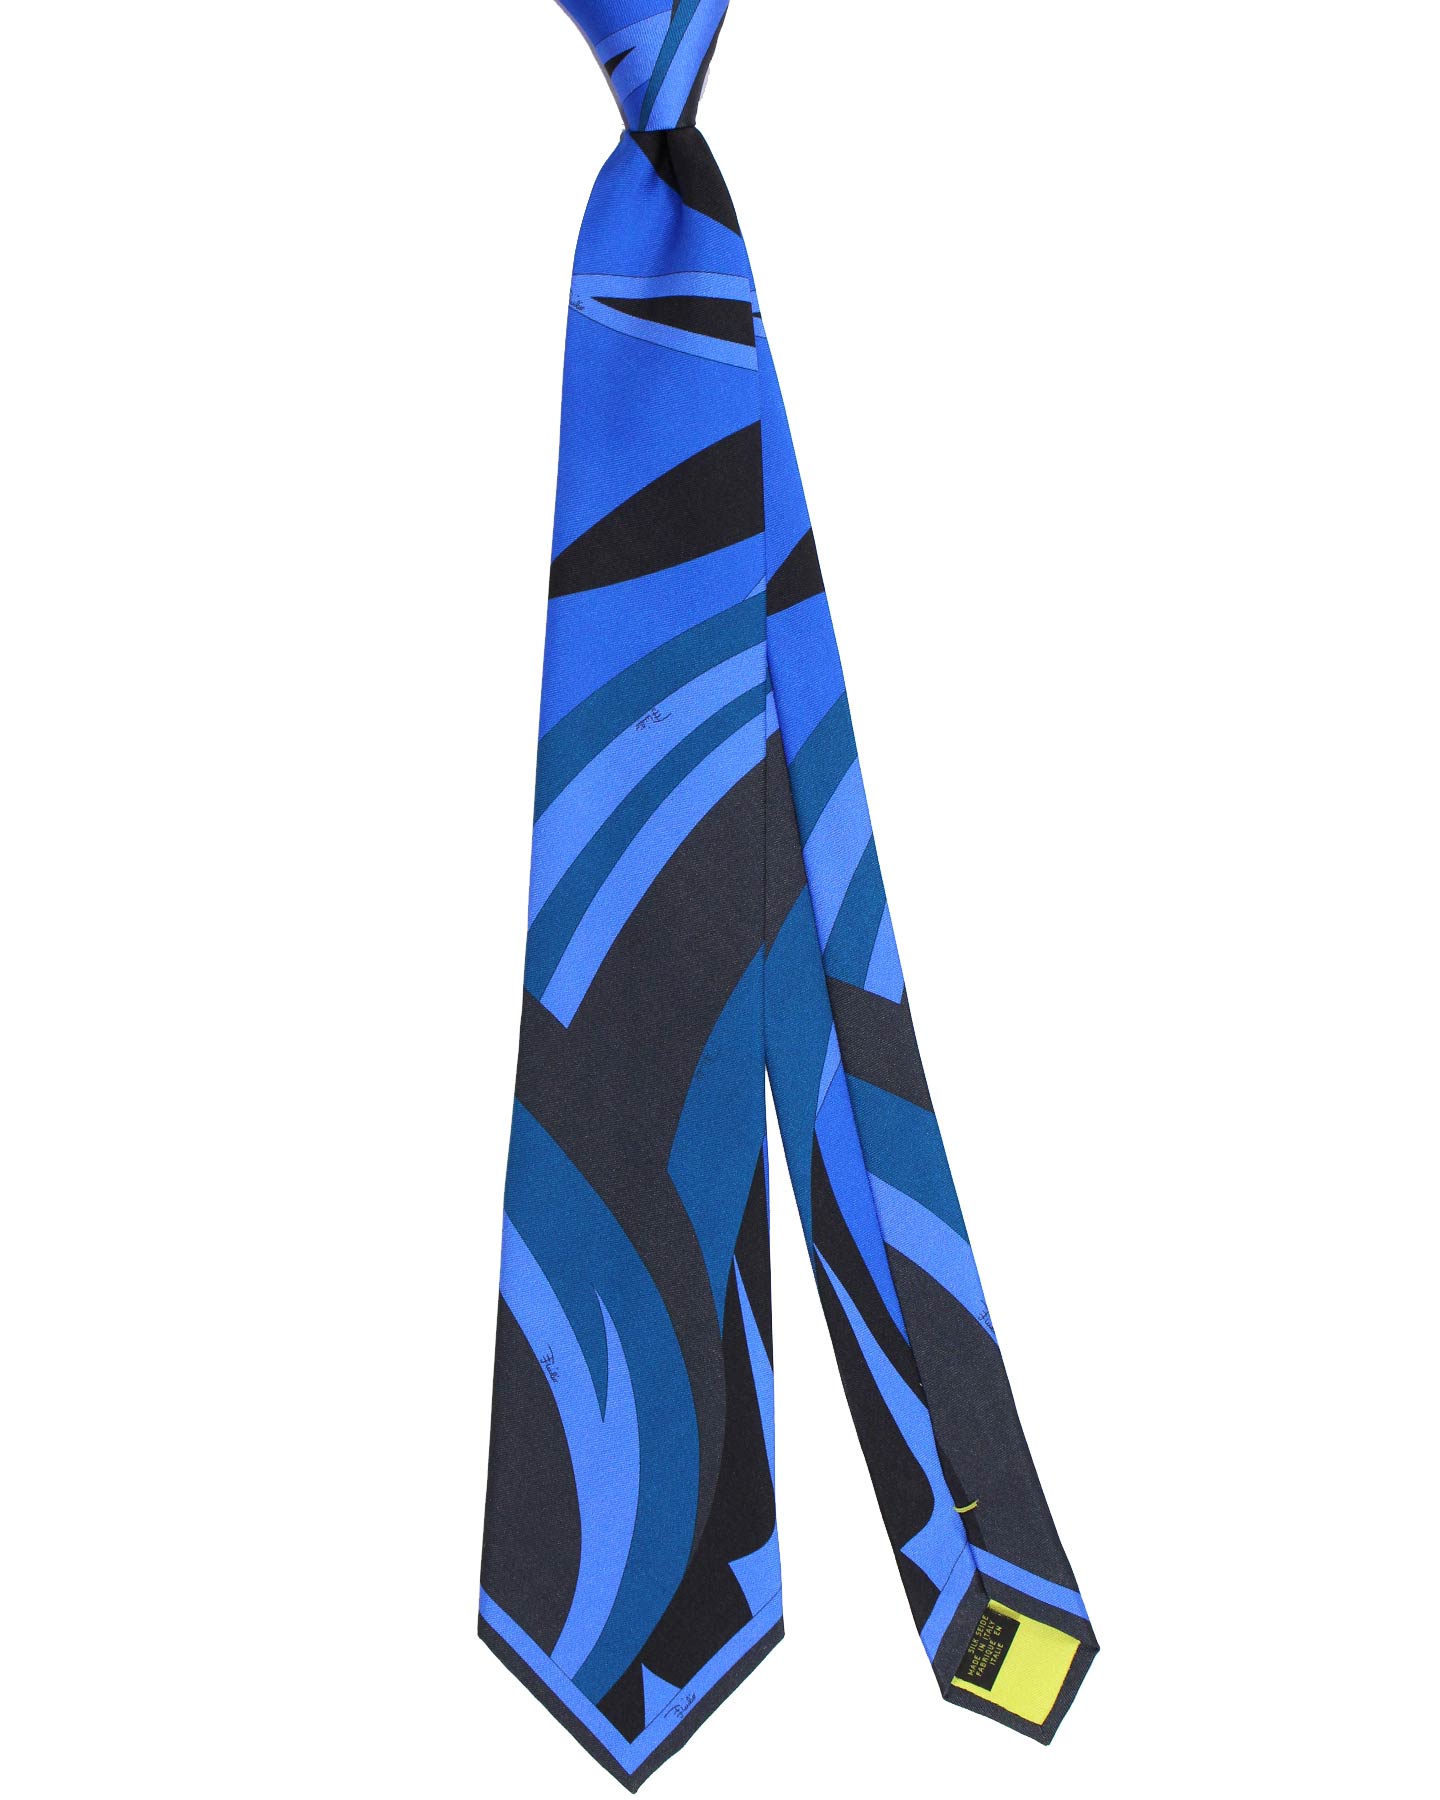 Emilio Pucci Silk Tie Signature Dark Blue Design